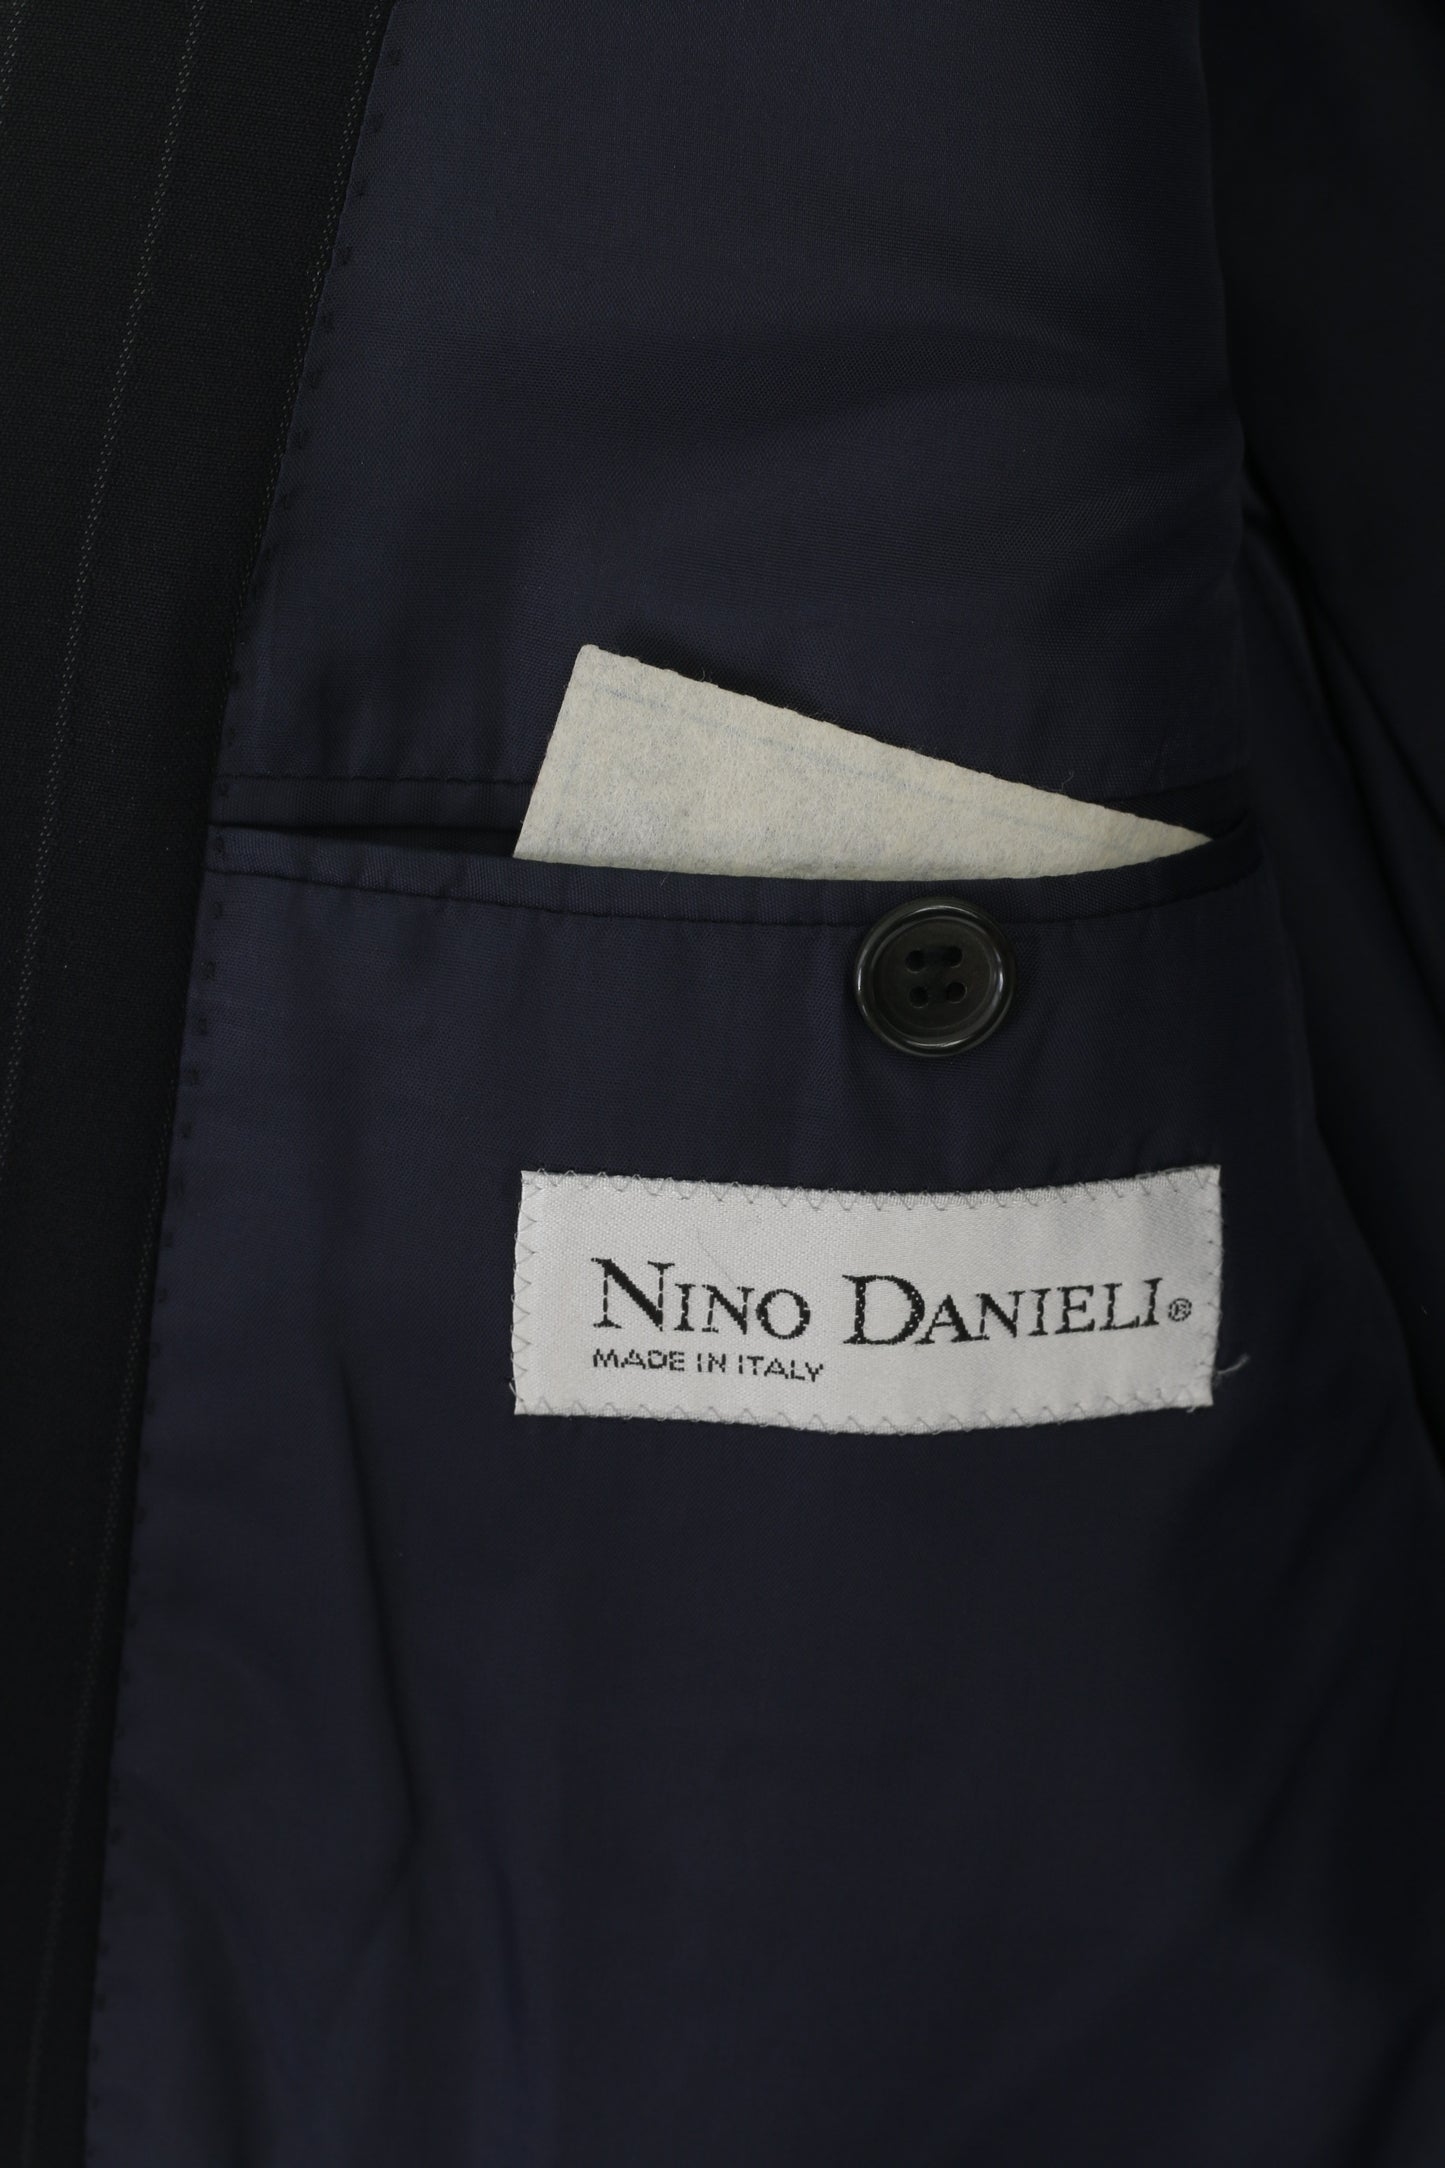 Nino Danieli Hommes 50 40 Blazer Marine Rayé Laine Fabriqué en Italie Veste Simple Boutonnage